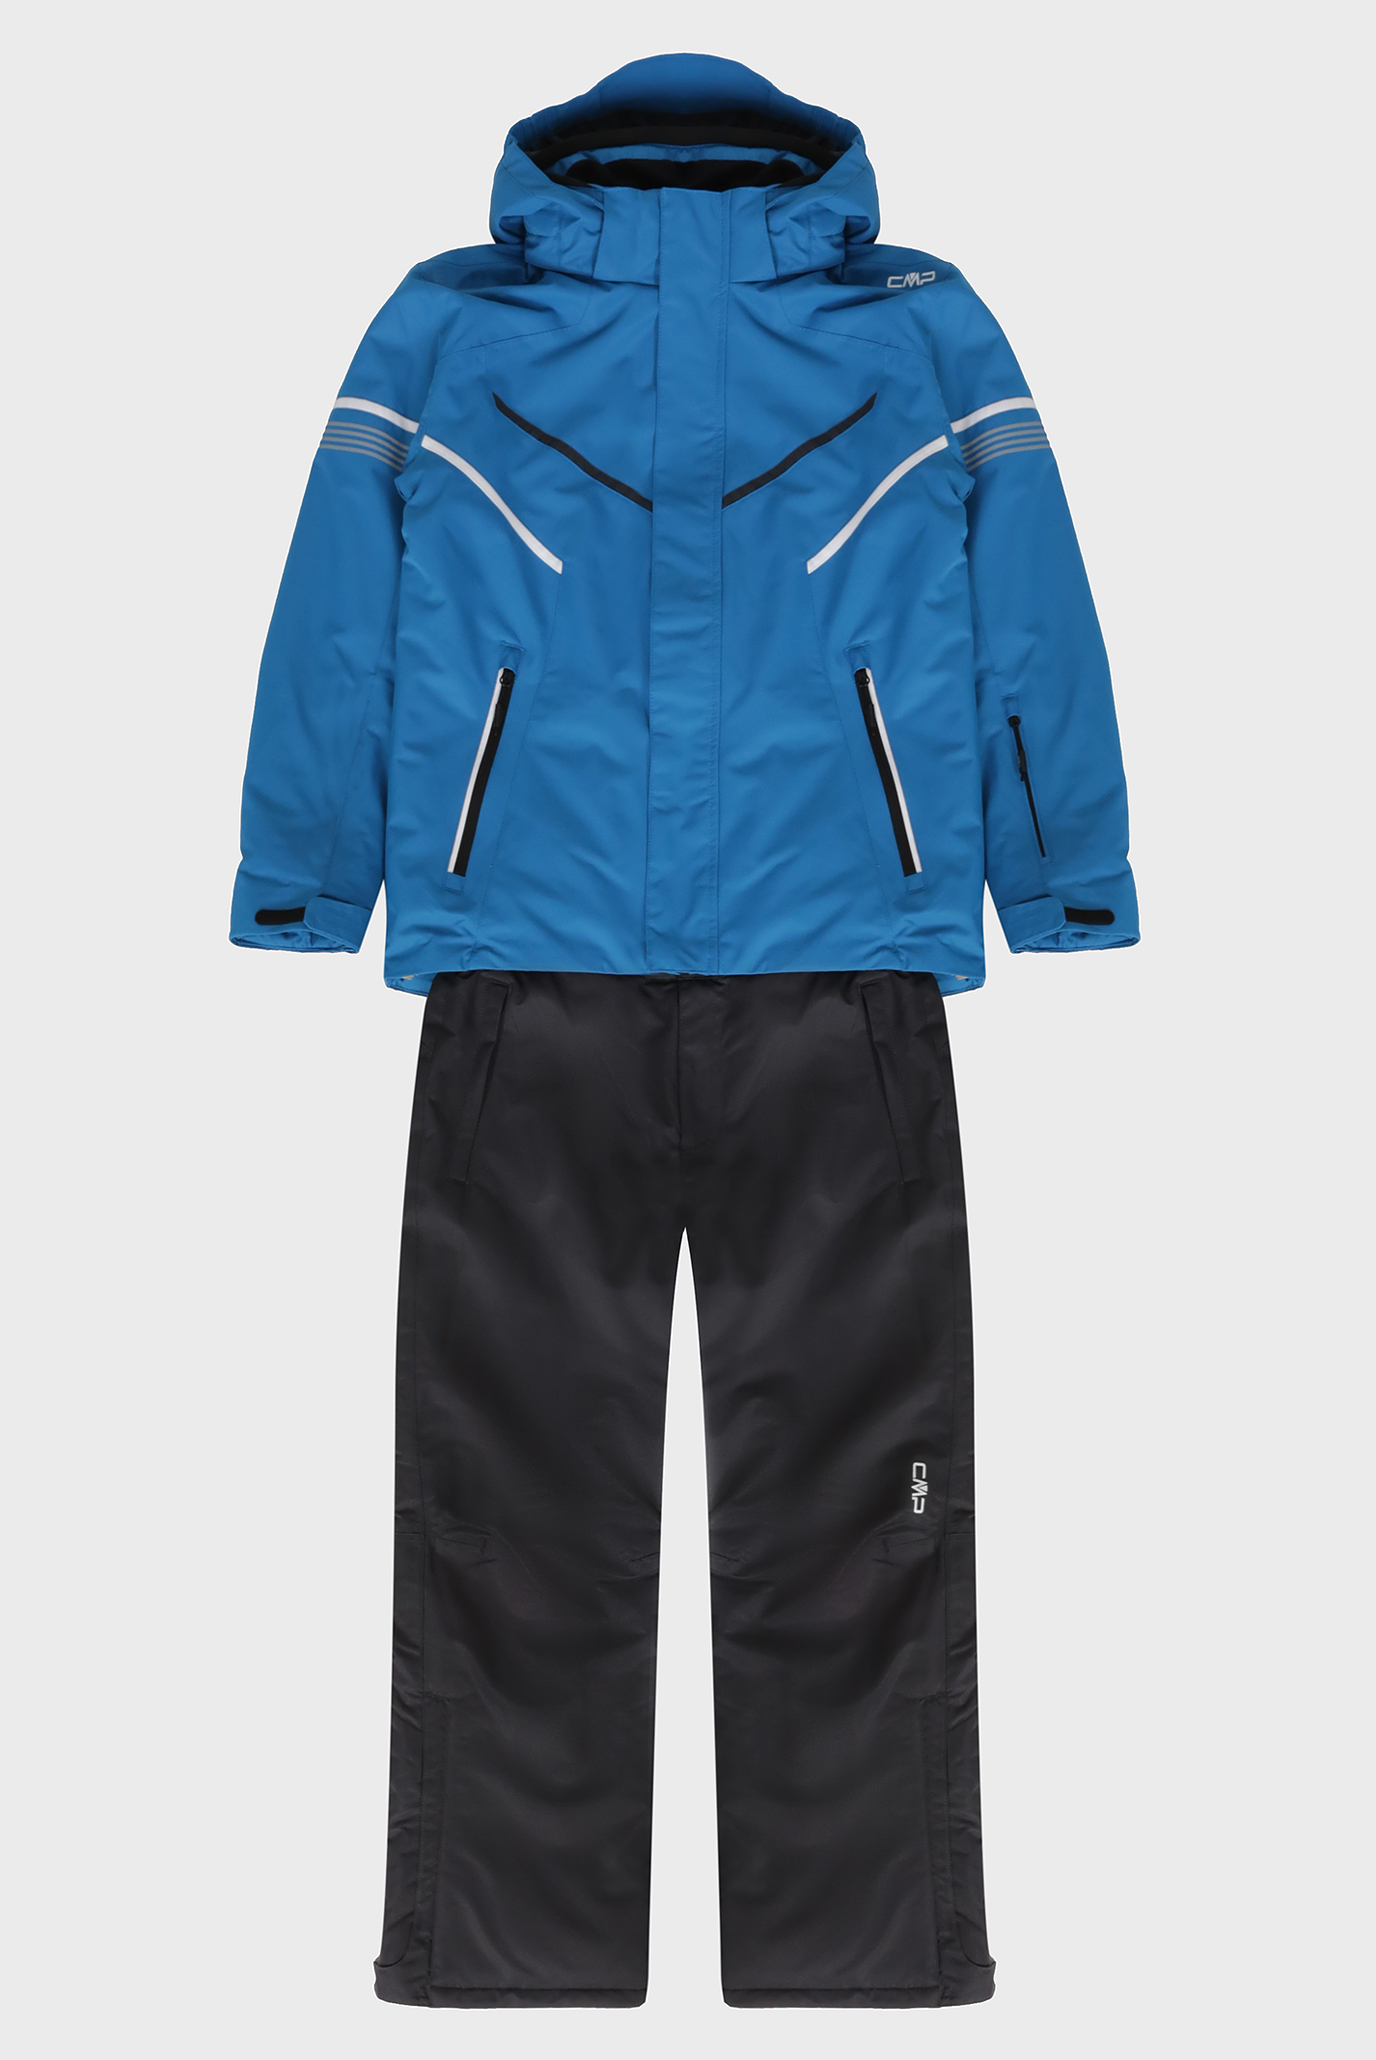 Дитячий синій лижний костюм (куртка, штани) 1